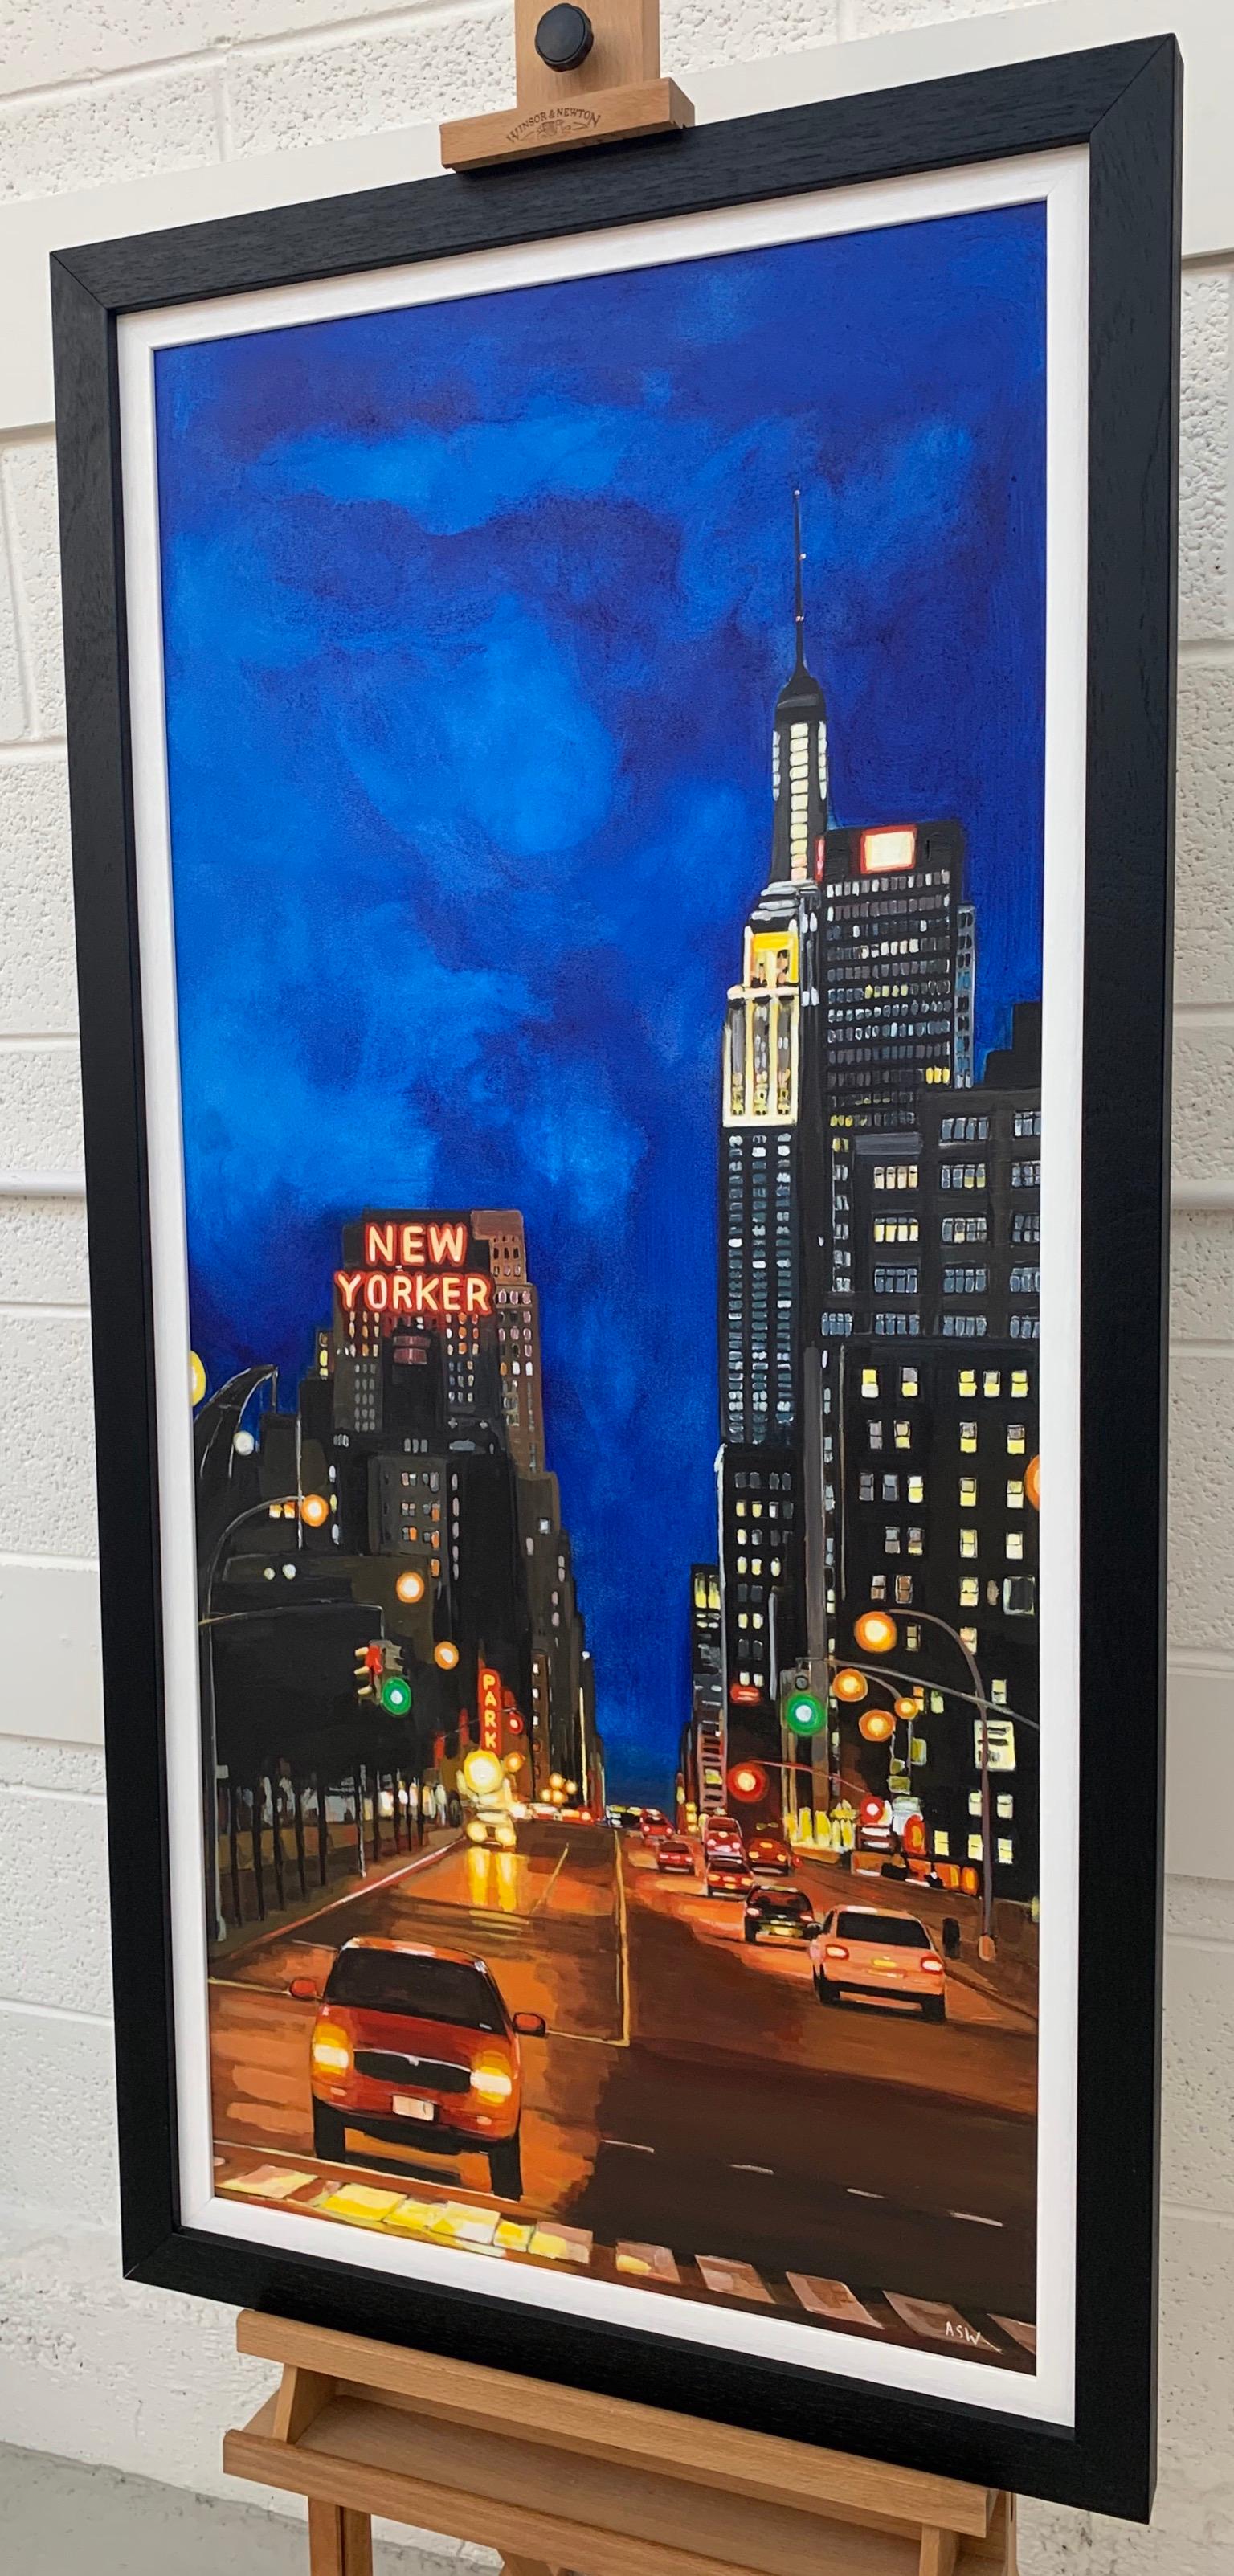 Peinture de l'hôtel Wyndham New Yorker, 8th Avenue, Manhattan, New York City, par l'artiste urbaine contemporaine britannique Angela Wakefield. Fait partie de sa série New York. 

L'œuvre d'art mesure 21 x 45 pouces
Le cadre mesure 26 x 50